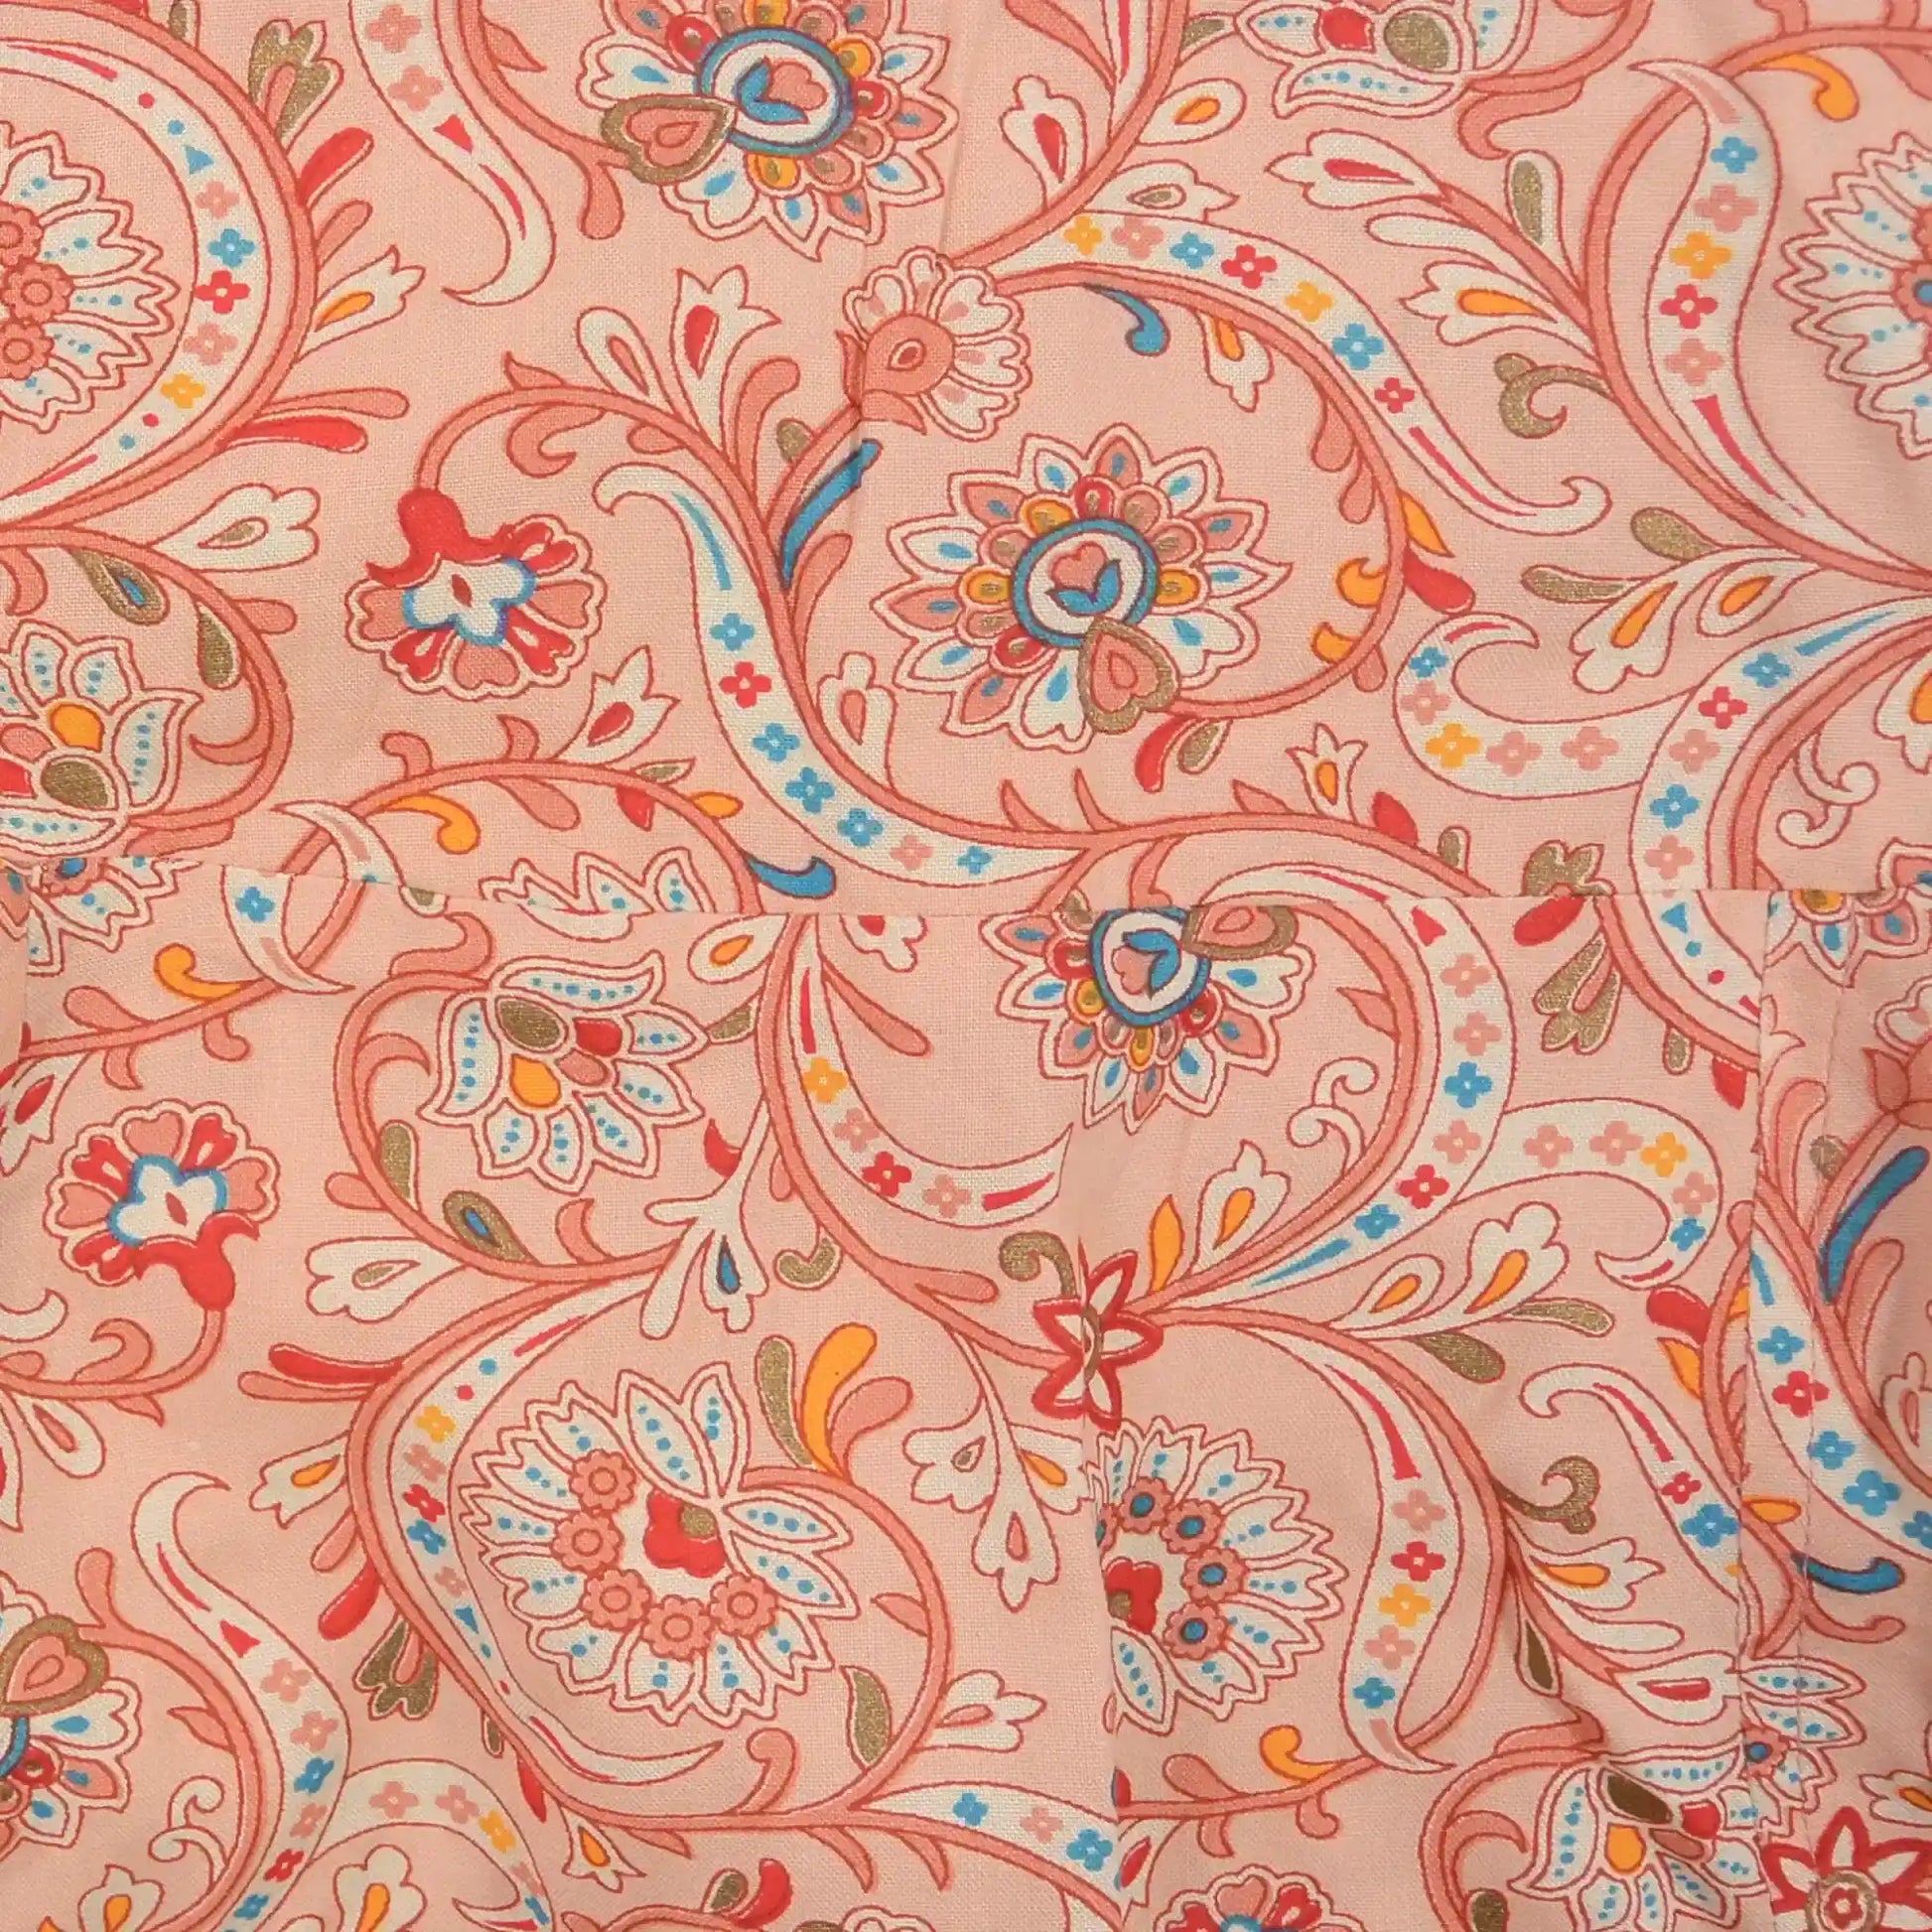 Ausschnitt Muster des Sommerrock, Maxirock aus Viskose, Rosa mit Blumenmornamenten. Elastischer Schlupfbund.